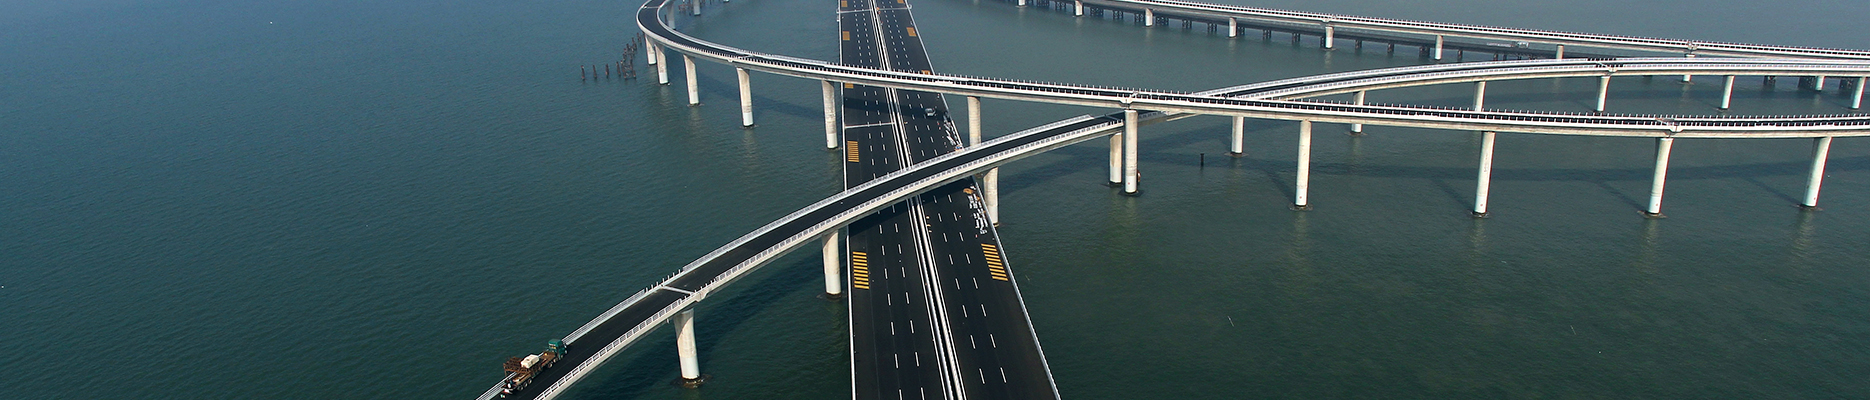 山东高速畅通路桥工程有限公司